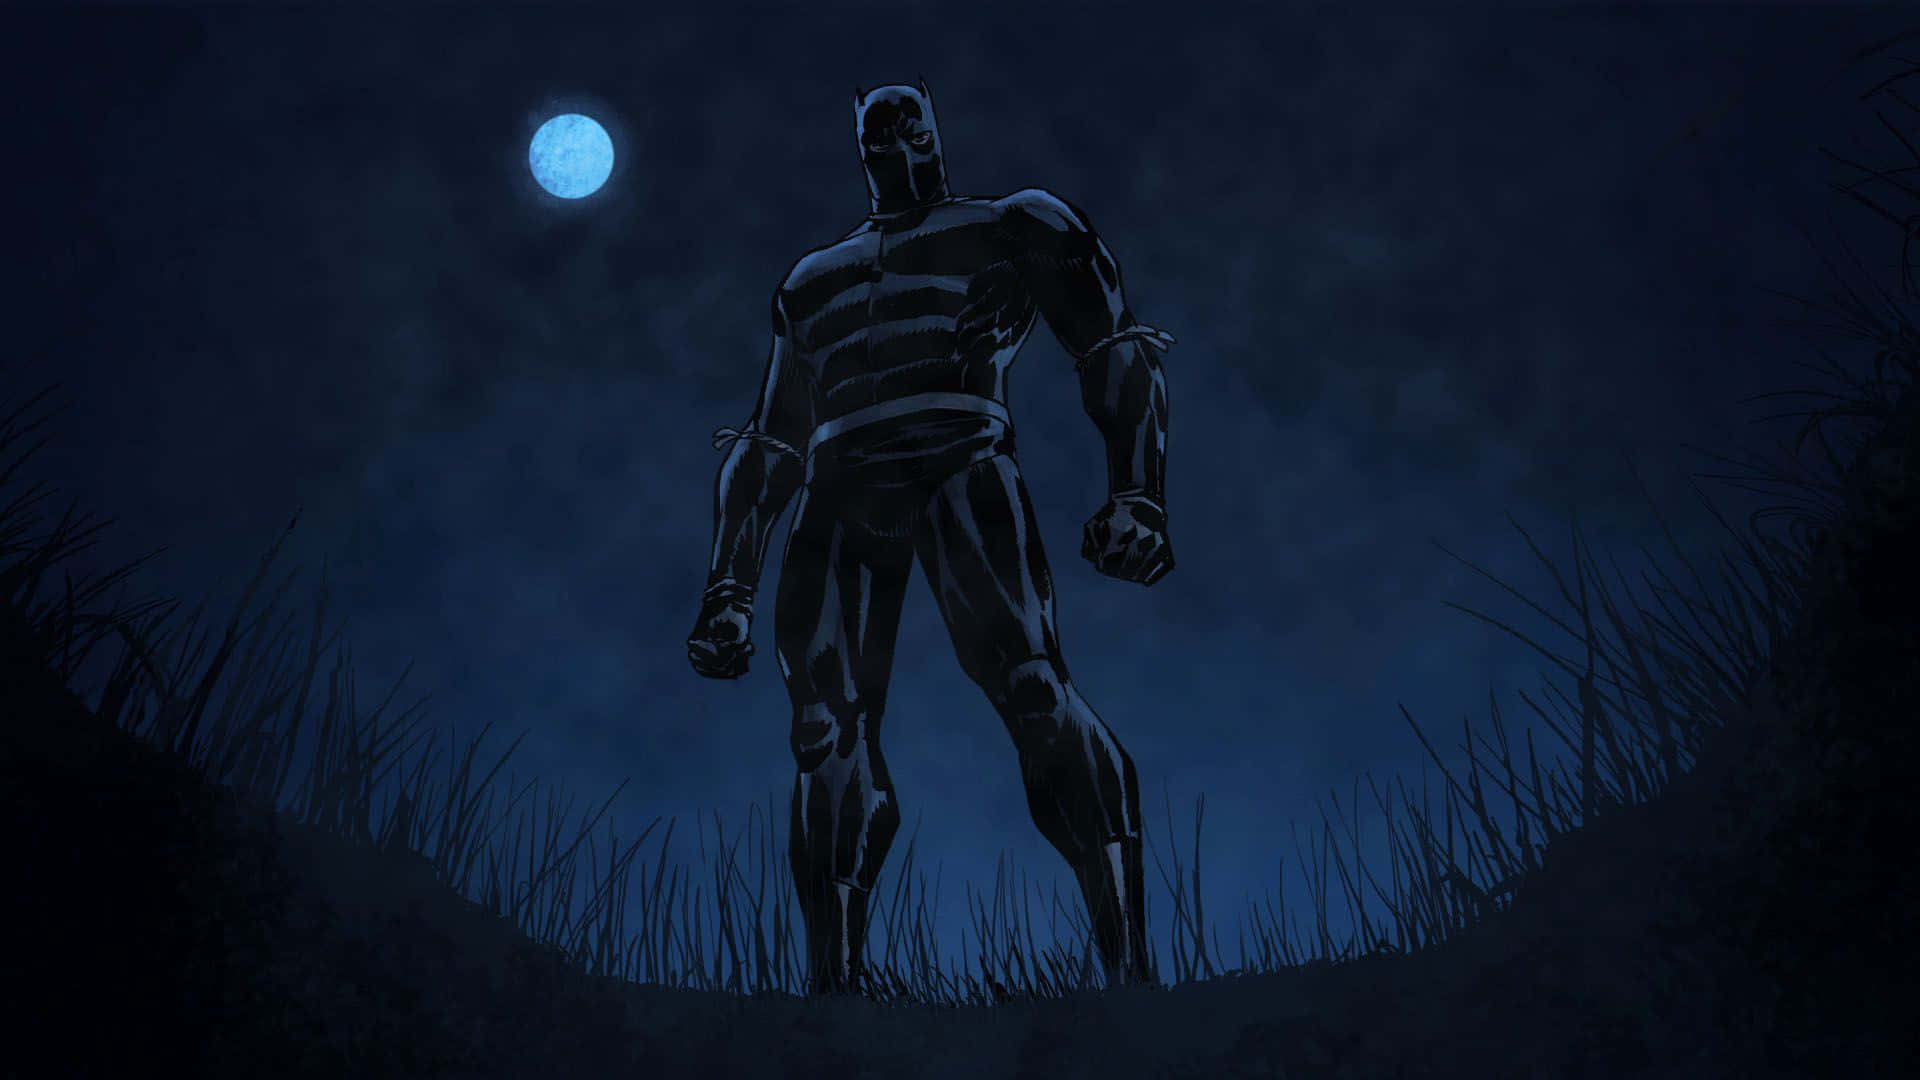 Chadwick Boseman as Black Panther, King of Wakanda Wallpaper